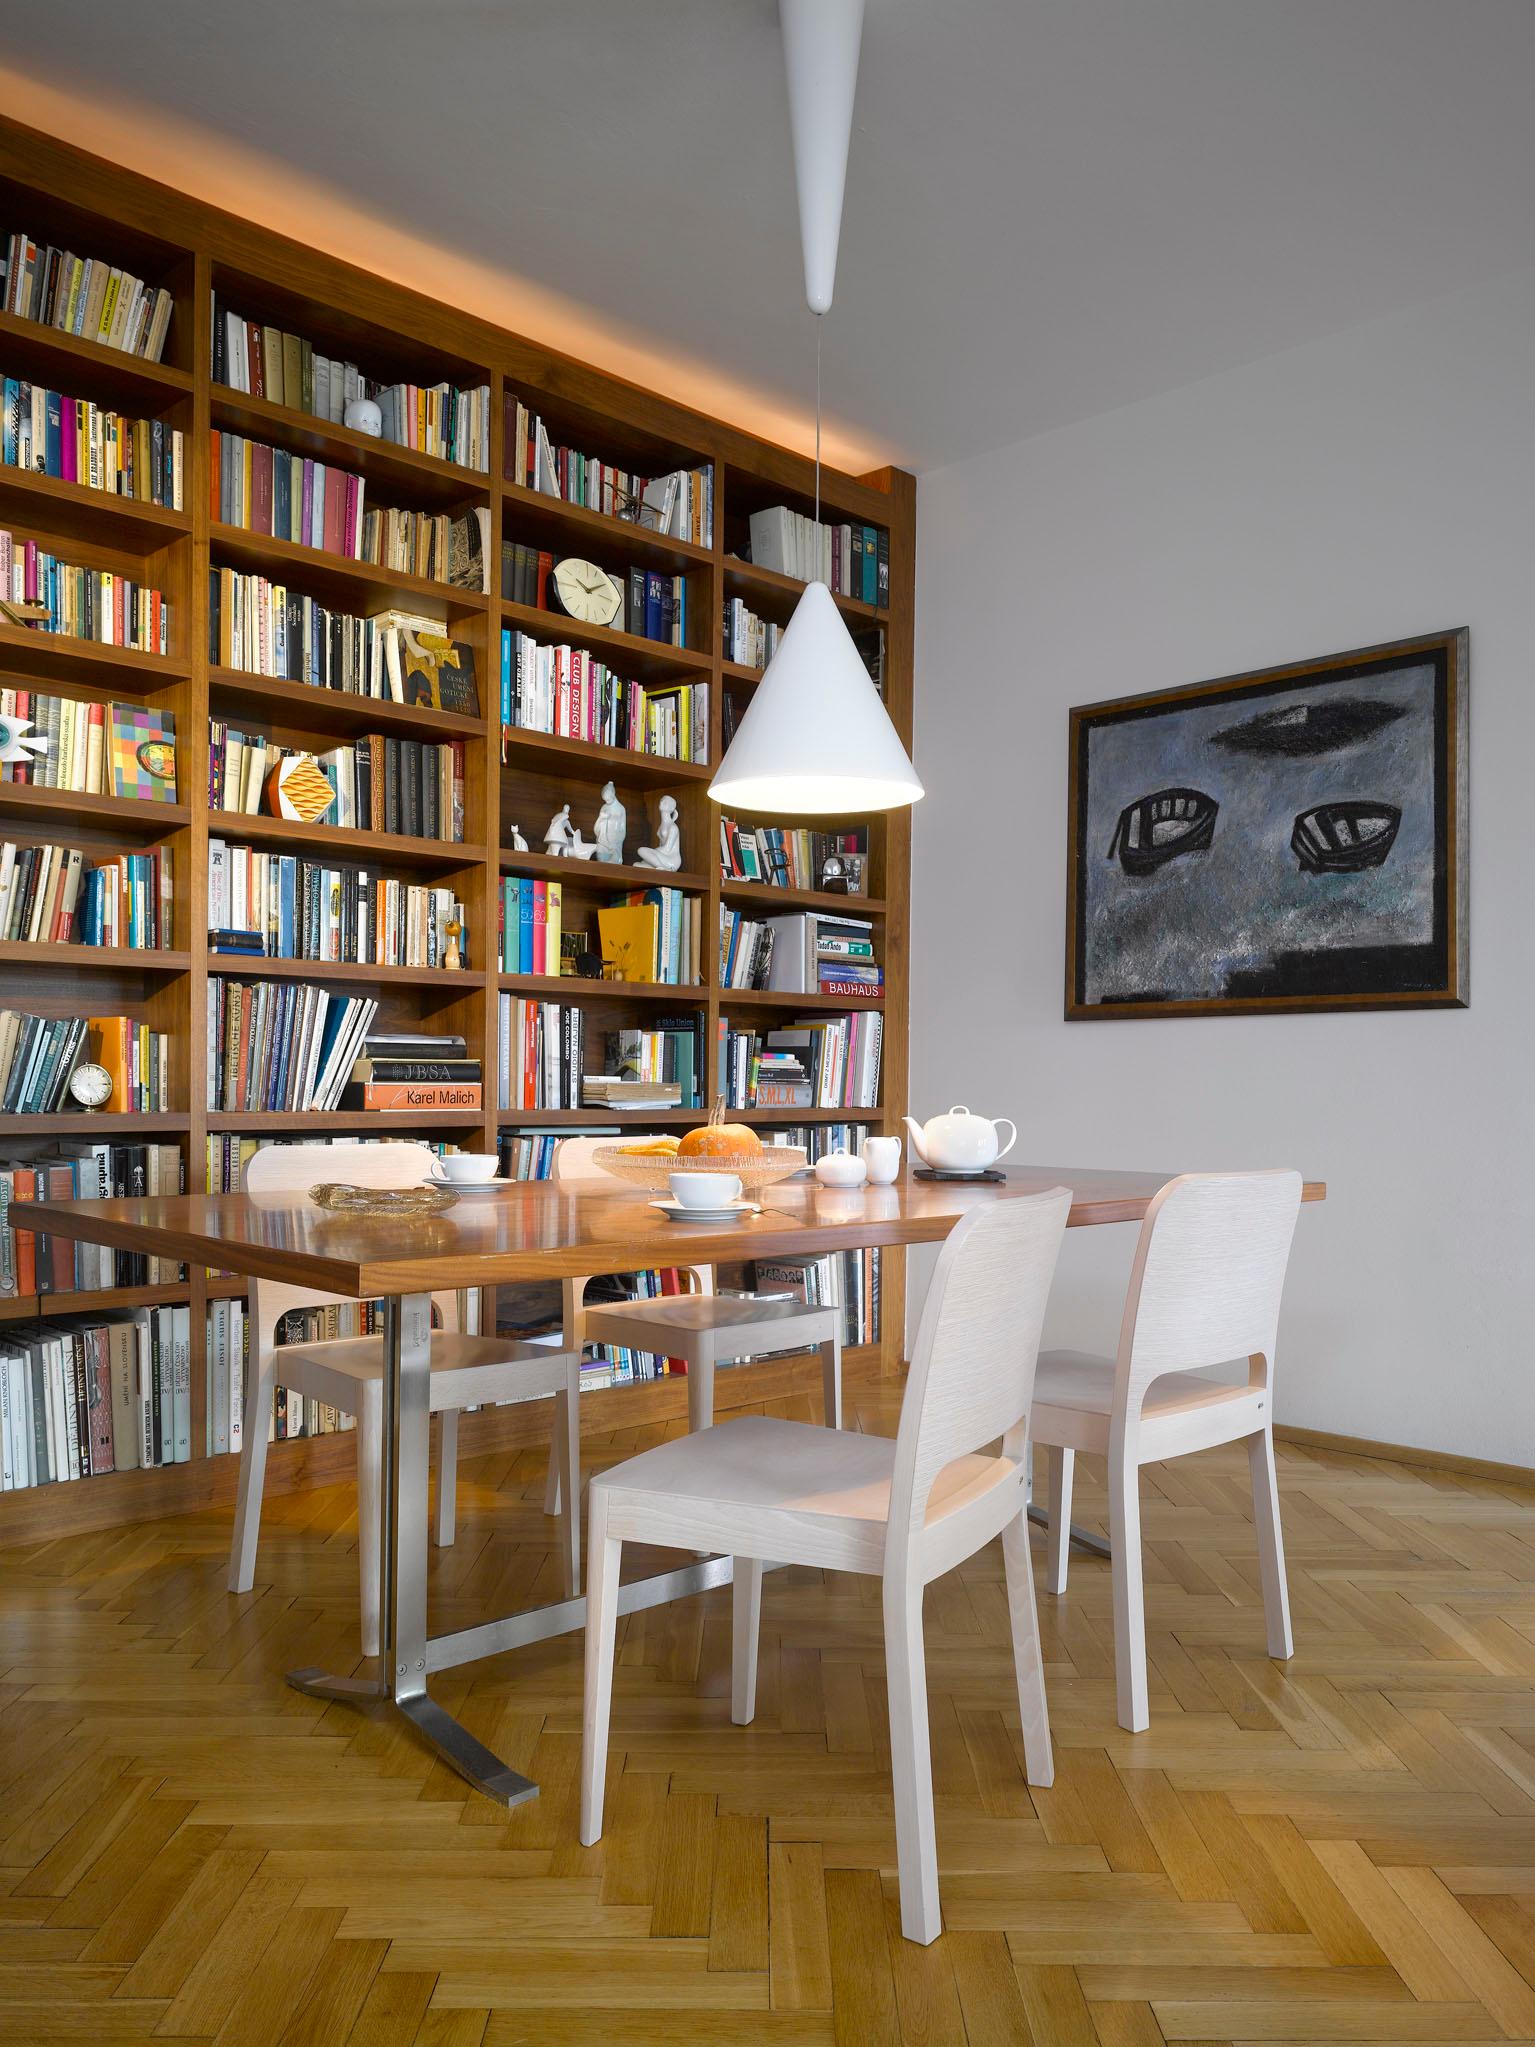 Bücherwand im Esszimmer #bücherregal #esstisch #wohnessbereich #essecke ©Ton